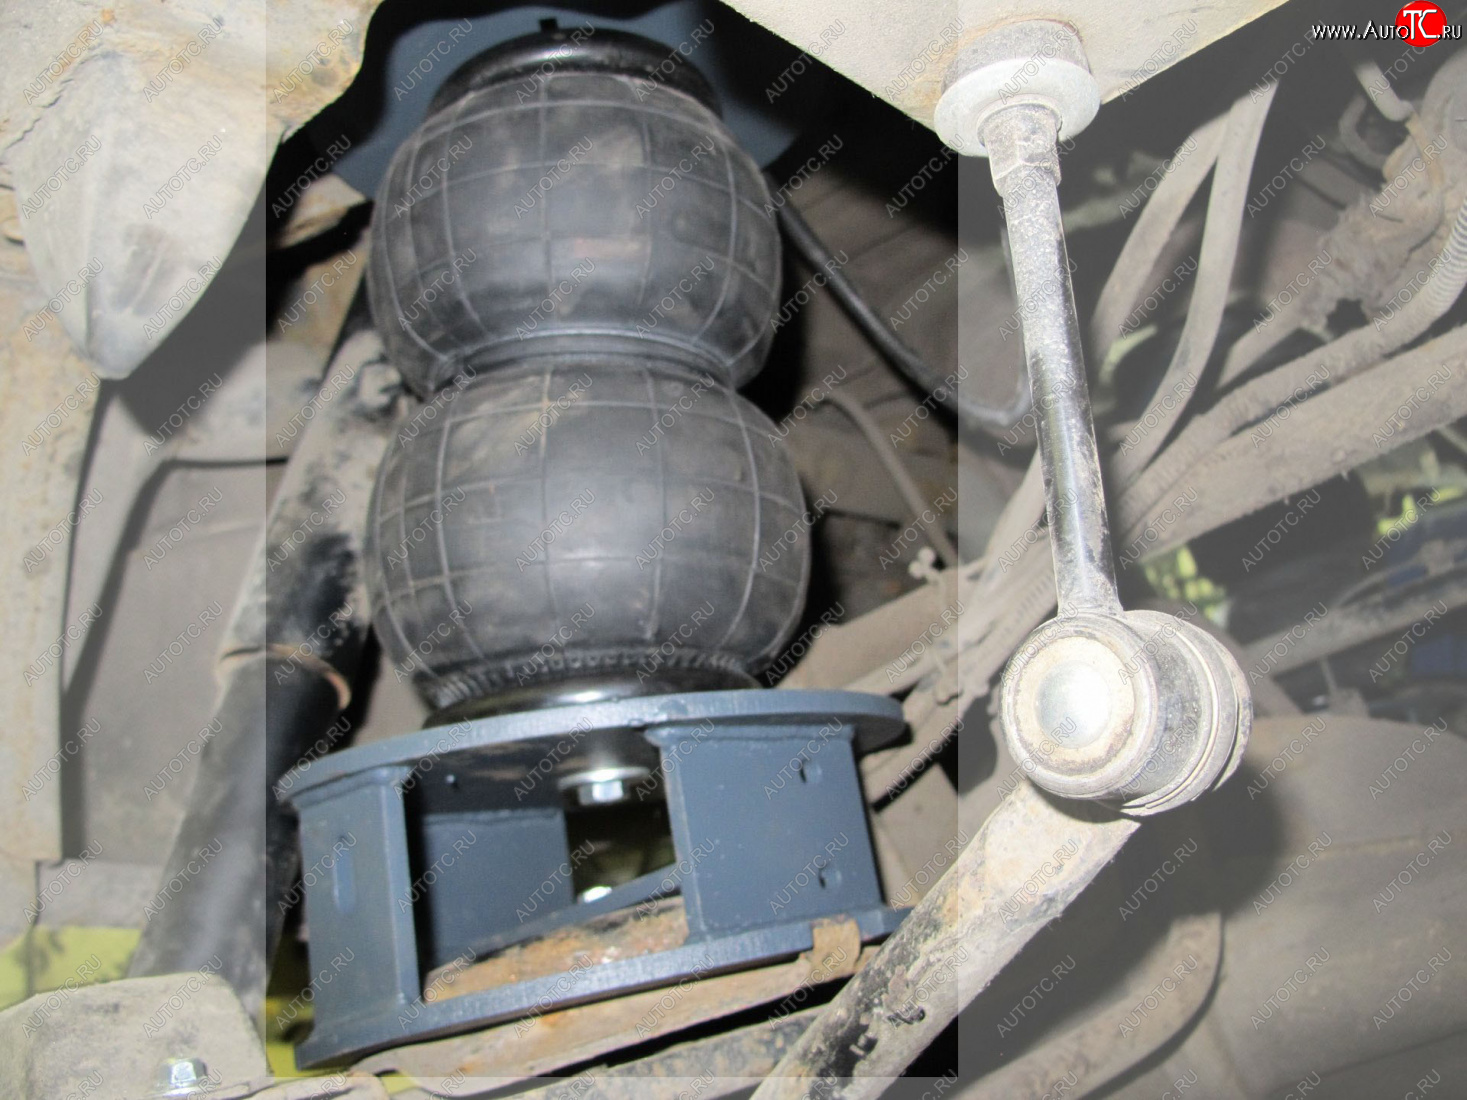 26 399 р. Комплект вспомогательной пневмоподвески на заднюю ось Aride  Nissan Patrol  5 (1997-2010)